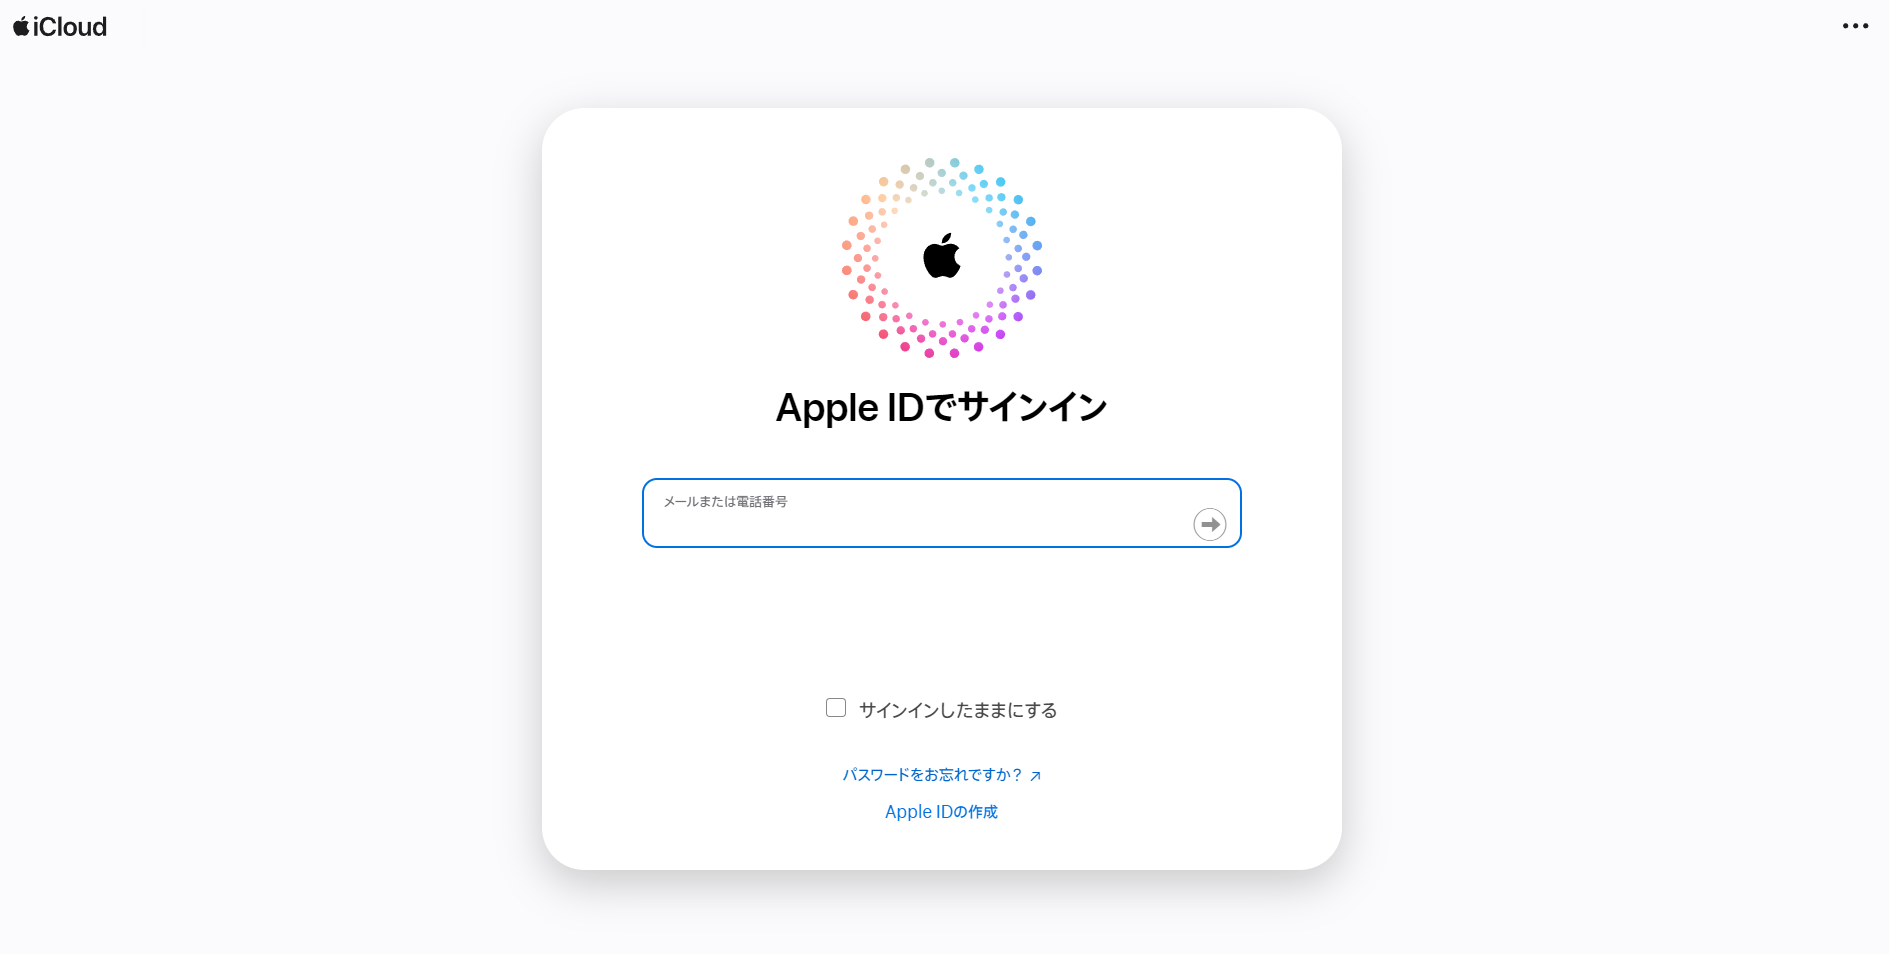 iCloud DriveでログインのためにApple IDを入力する画面